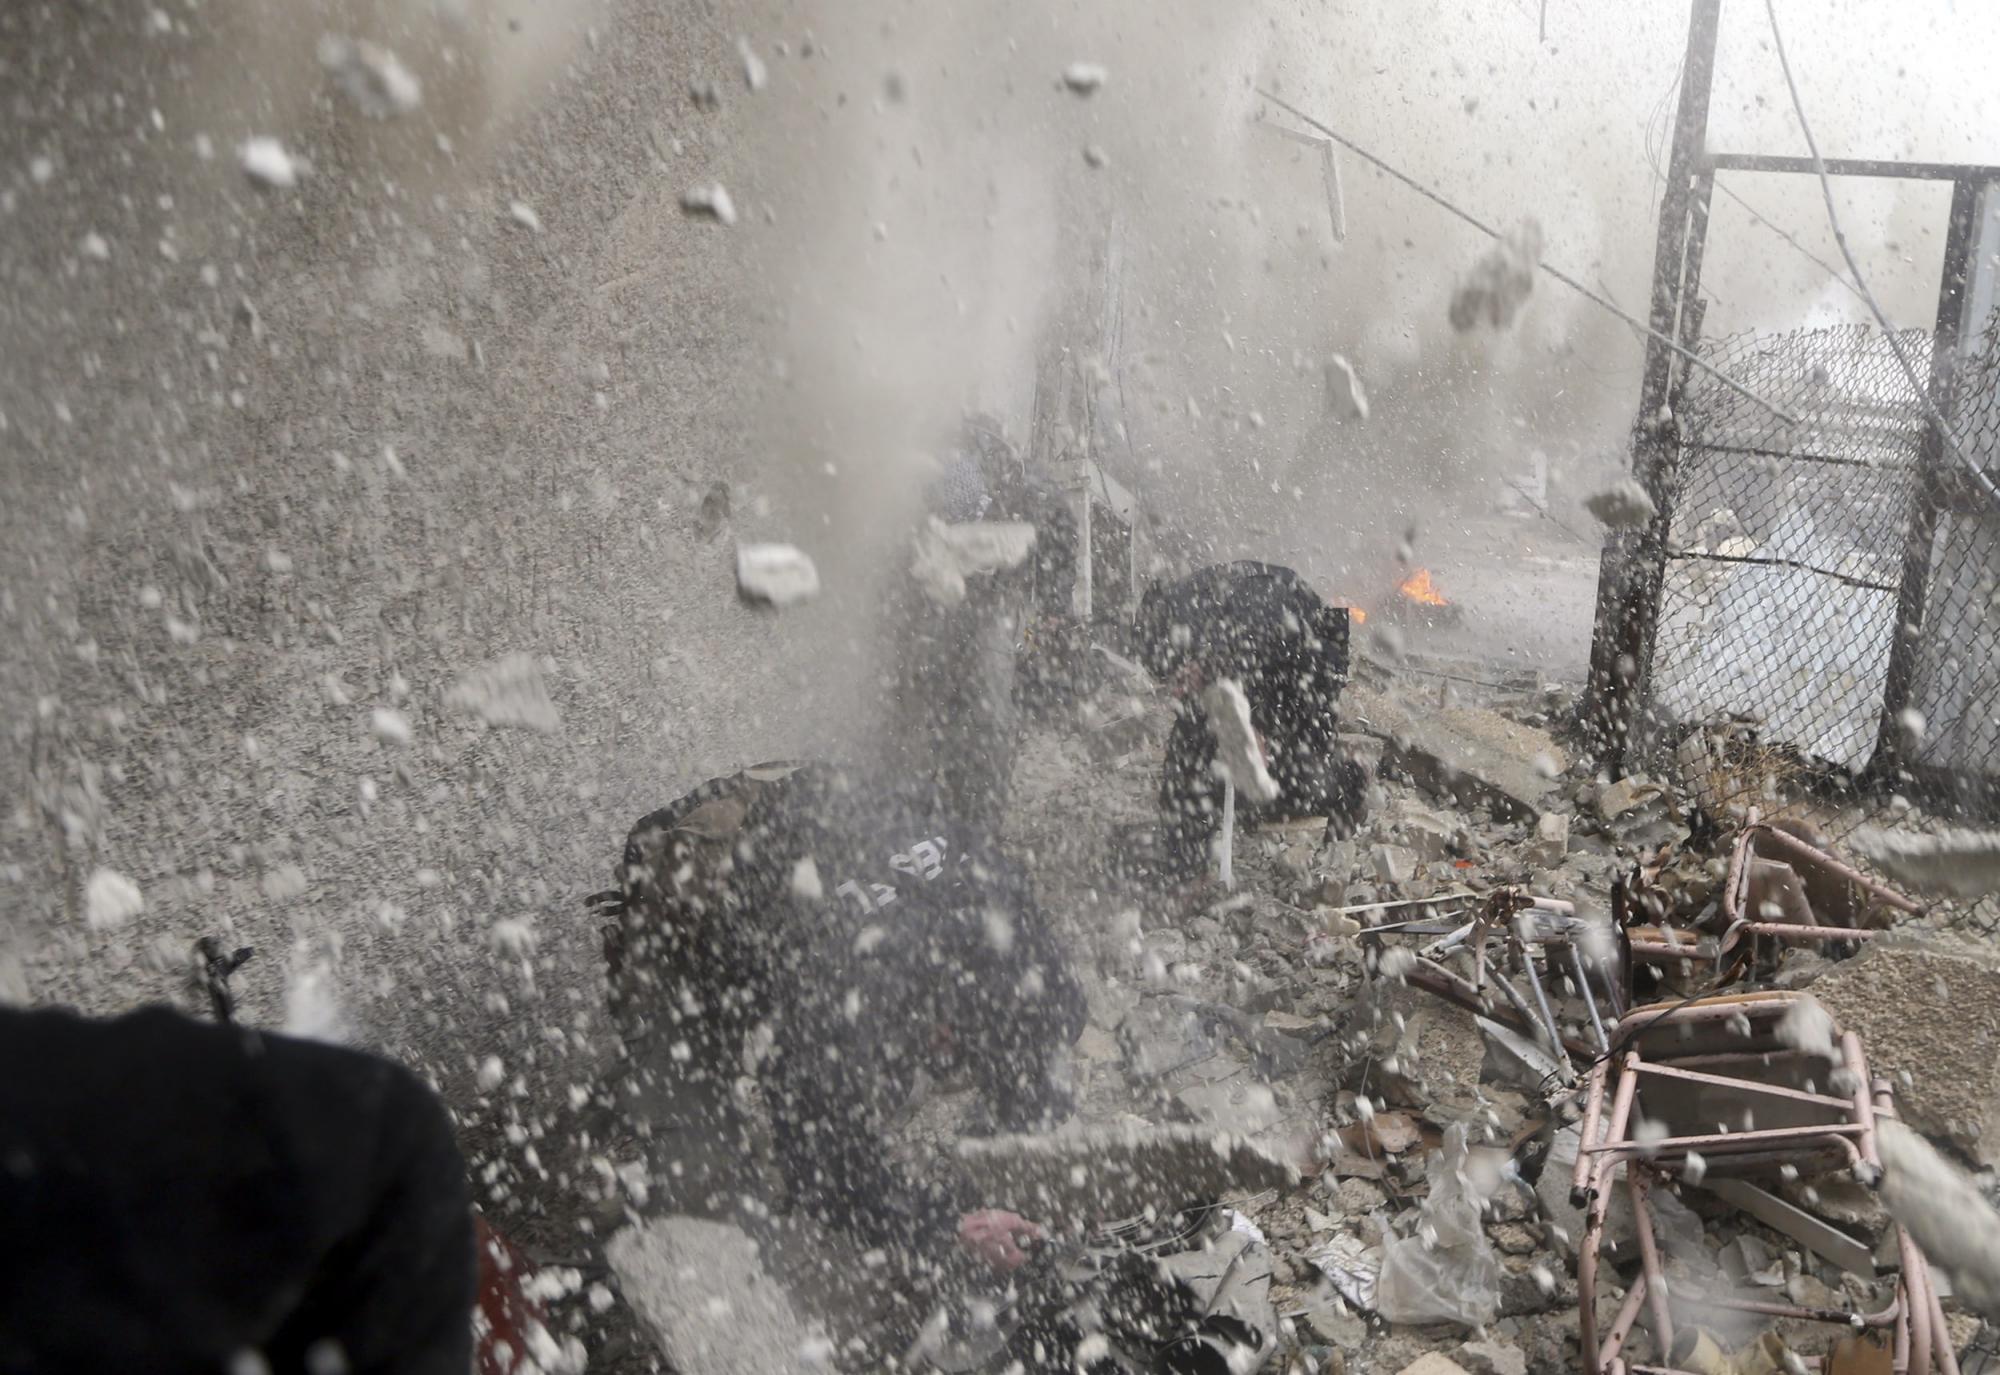 叙军方称遭以色列战机轰炸 反对派愿有条件谈判